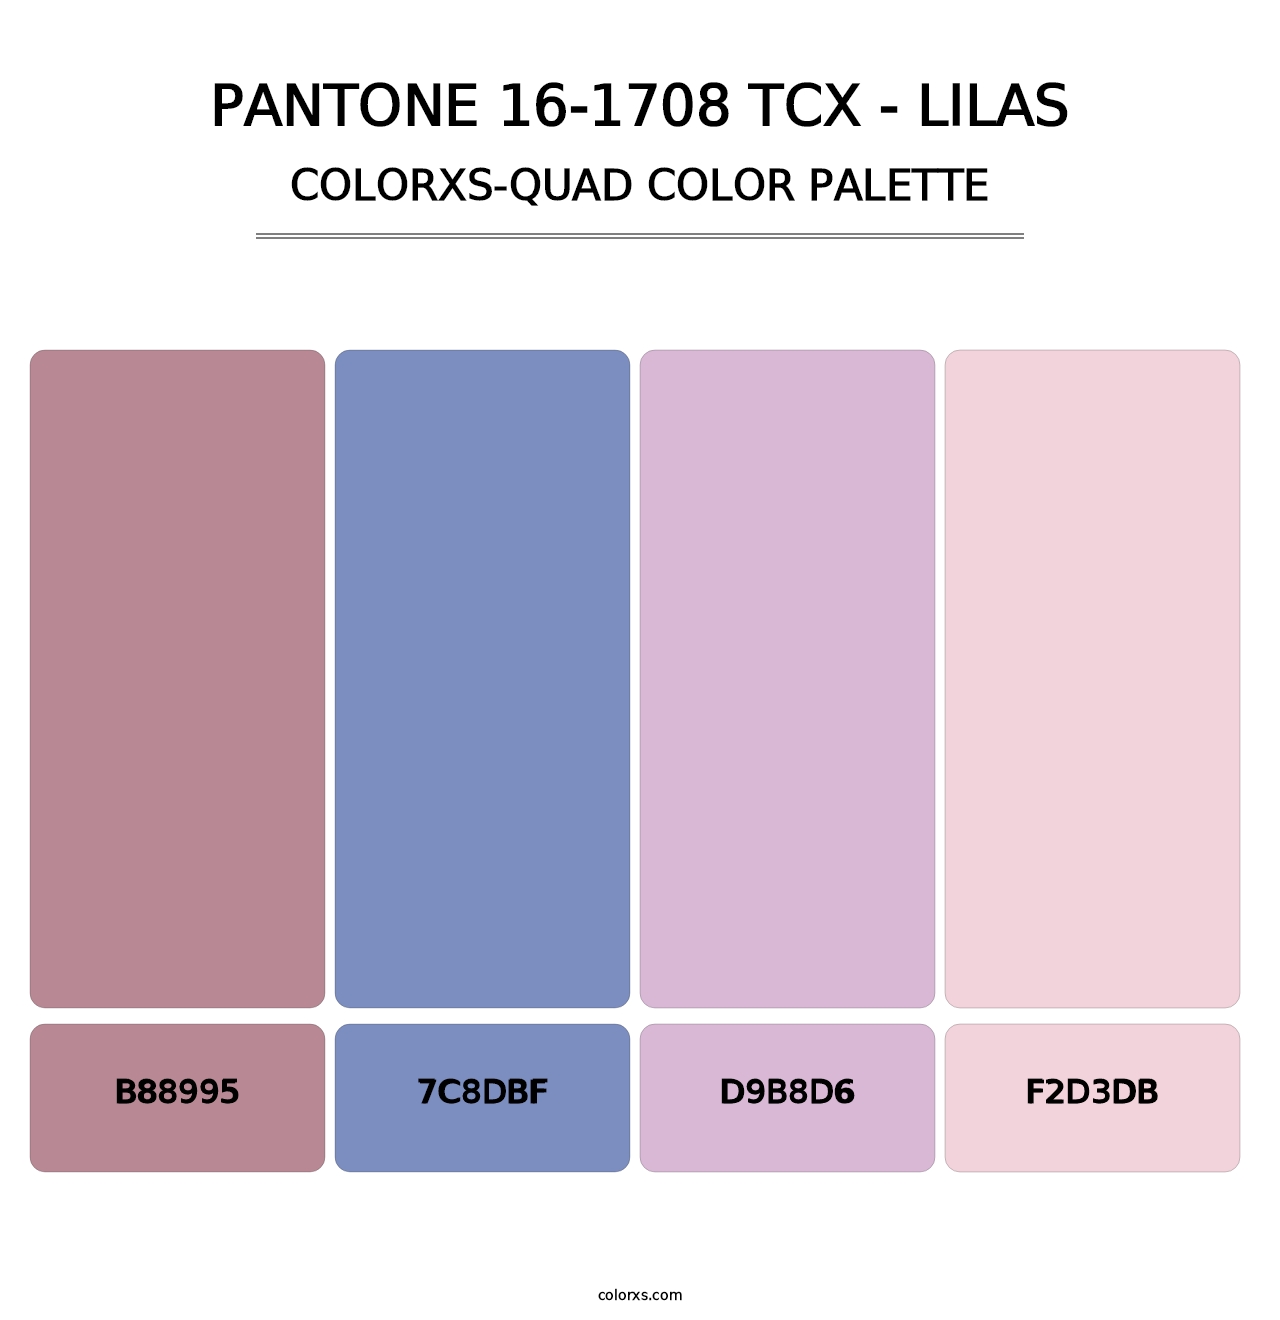 PANTONE 16-1708 TCX - Lilas - Colorxs Quad Palette